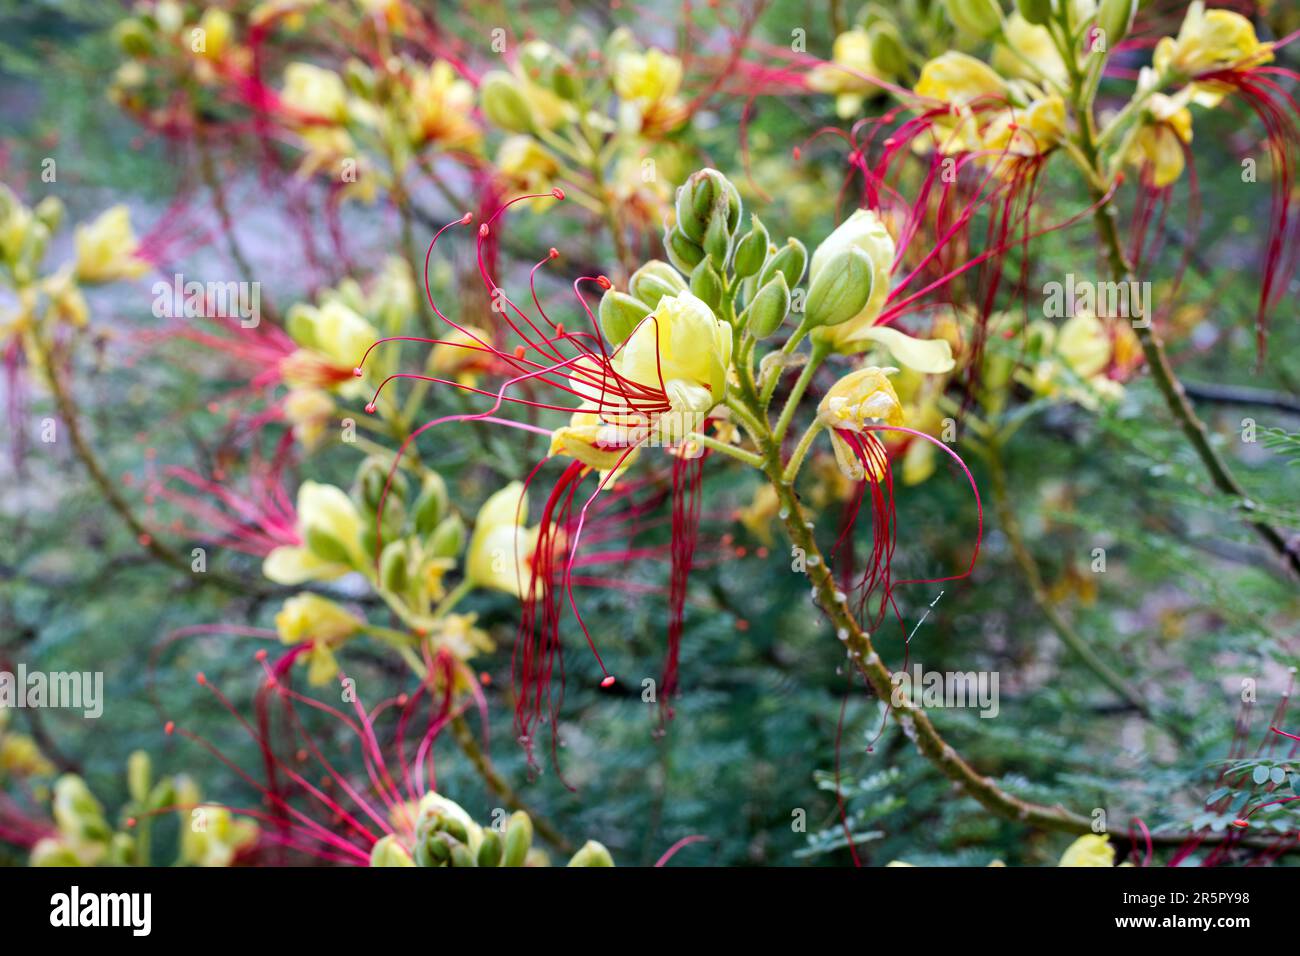 Erythrostemon gilliesii (Bird of paradise) flowers. Legume family shrub. Stock Photo